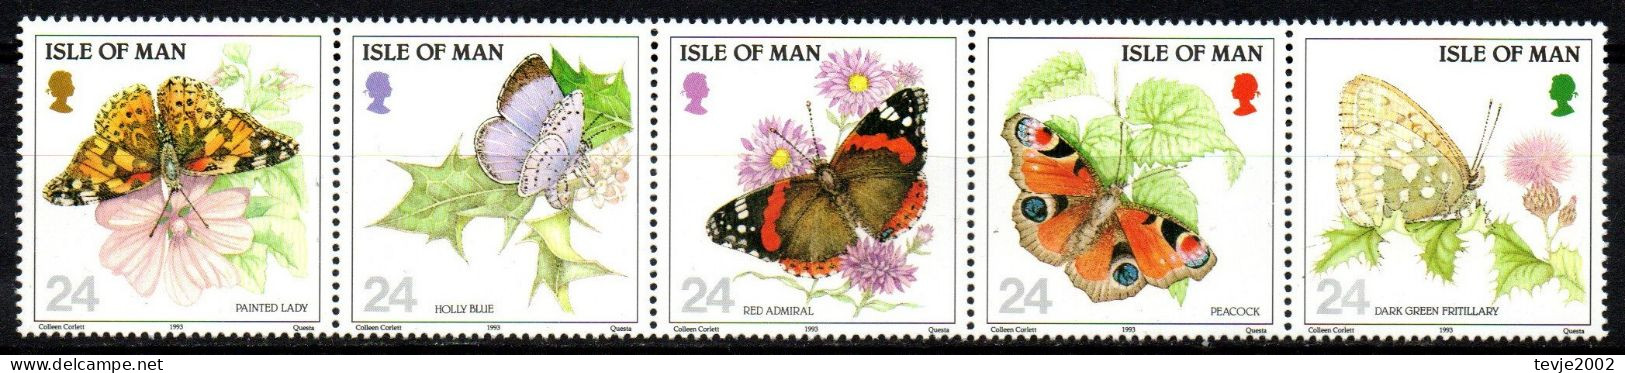 Isle Of Man 1993 - Mi.Nr. 555 - 559 - Postfrisch MNH - Tiere Animals Schmetterlinge Butterflies - Vlinders